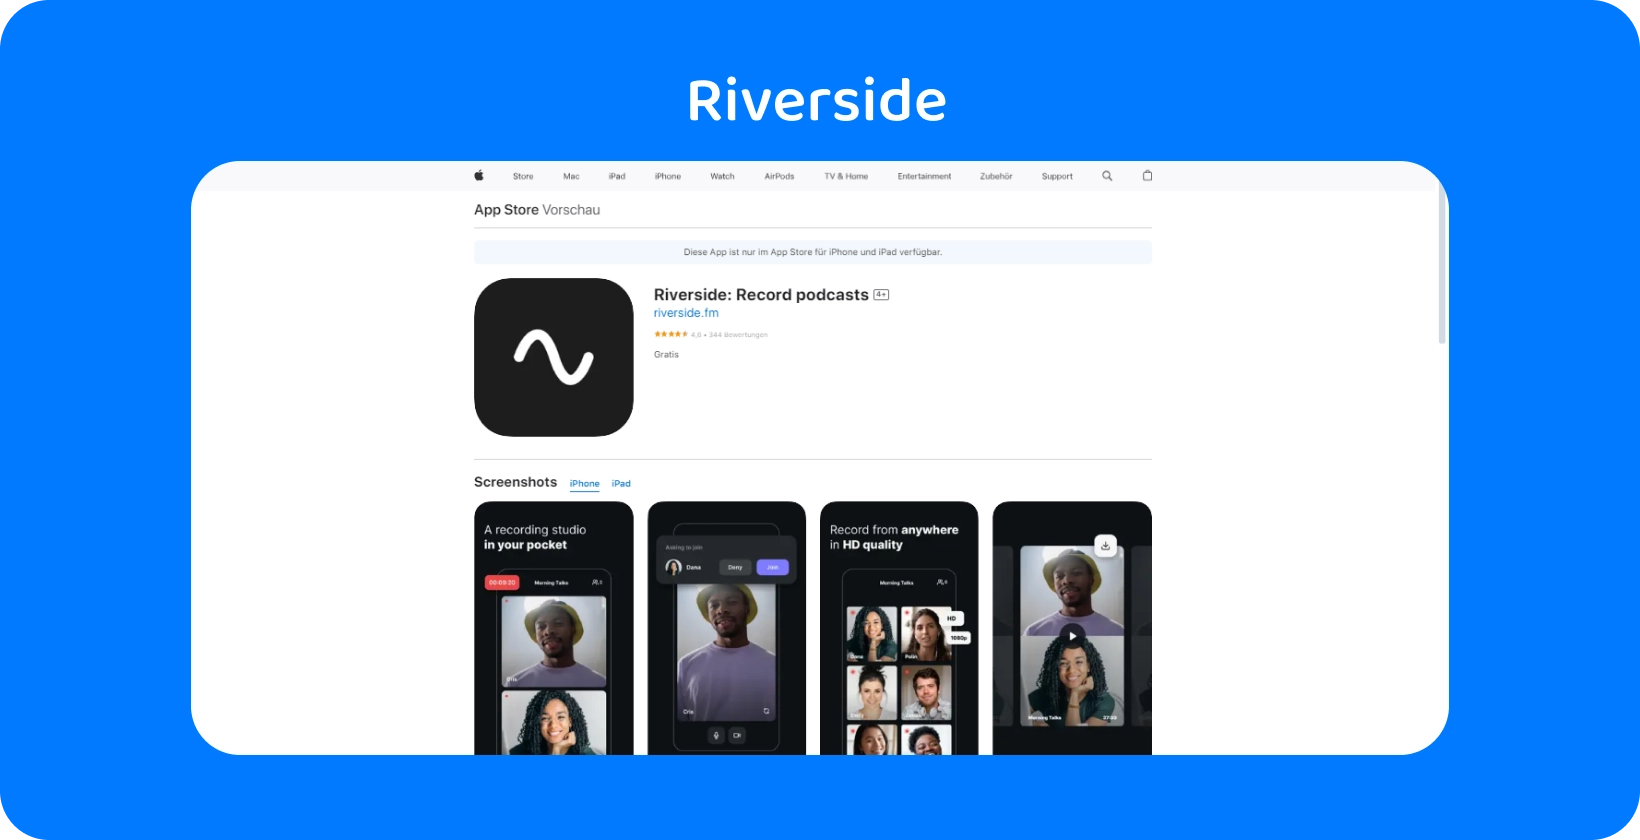 Η εφαρμογή Riverside στο App Store εμφανίζει εργαλεία για εγγραφή podcast υψηλής ποιότητας και απομακρυσμένες συνεντεύξεις.